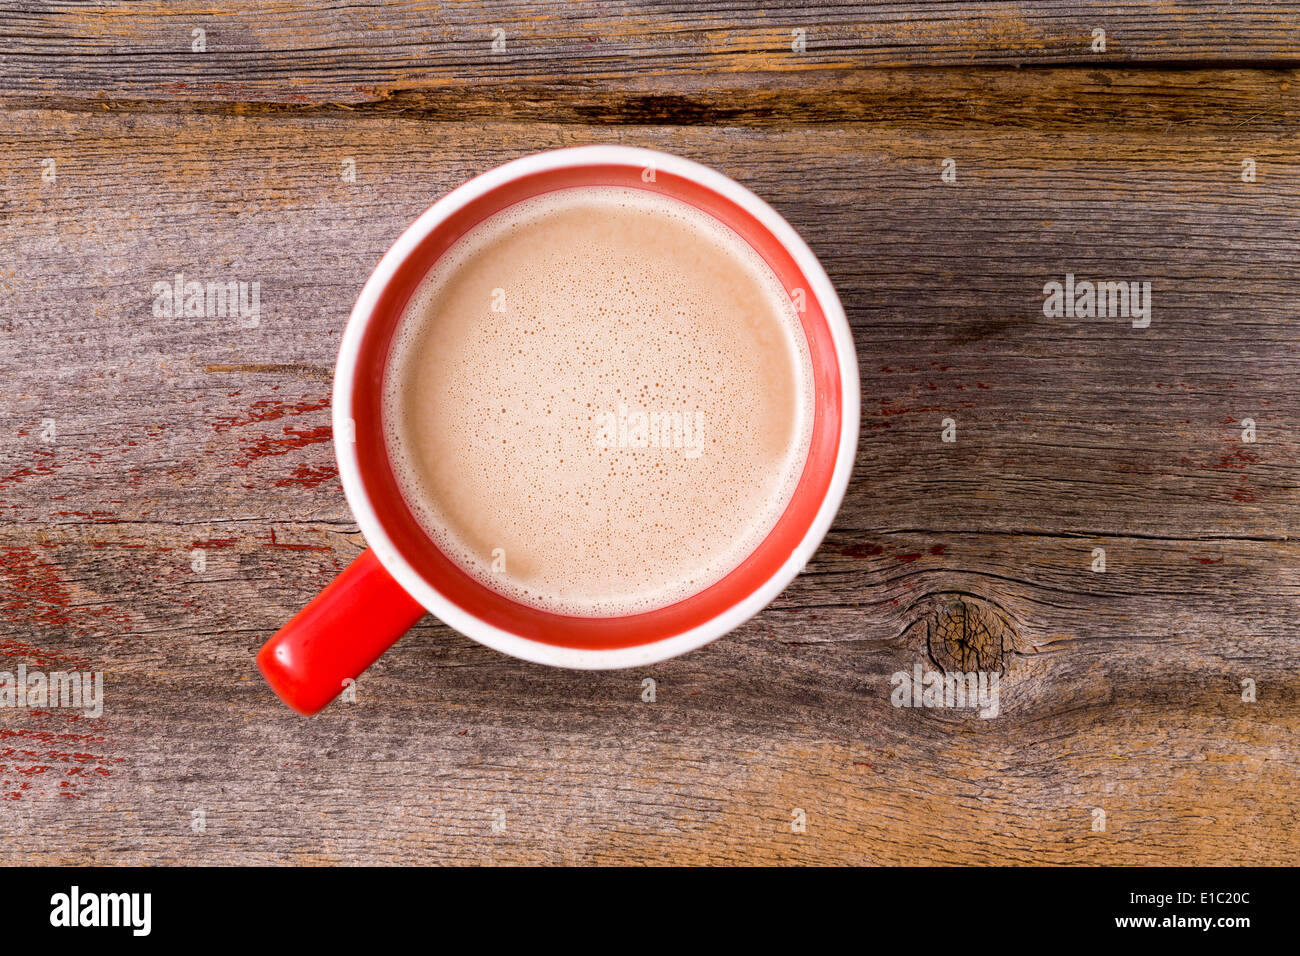 Tasse en céramique orange plein de douce chaude latte café surmonté d'une écume laiteuse , vue aérienne sur une table en bois avec copie Banque D'Images